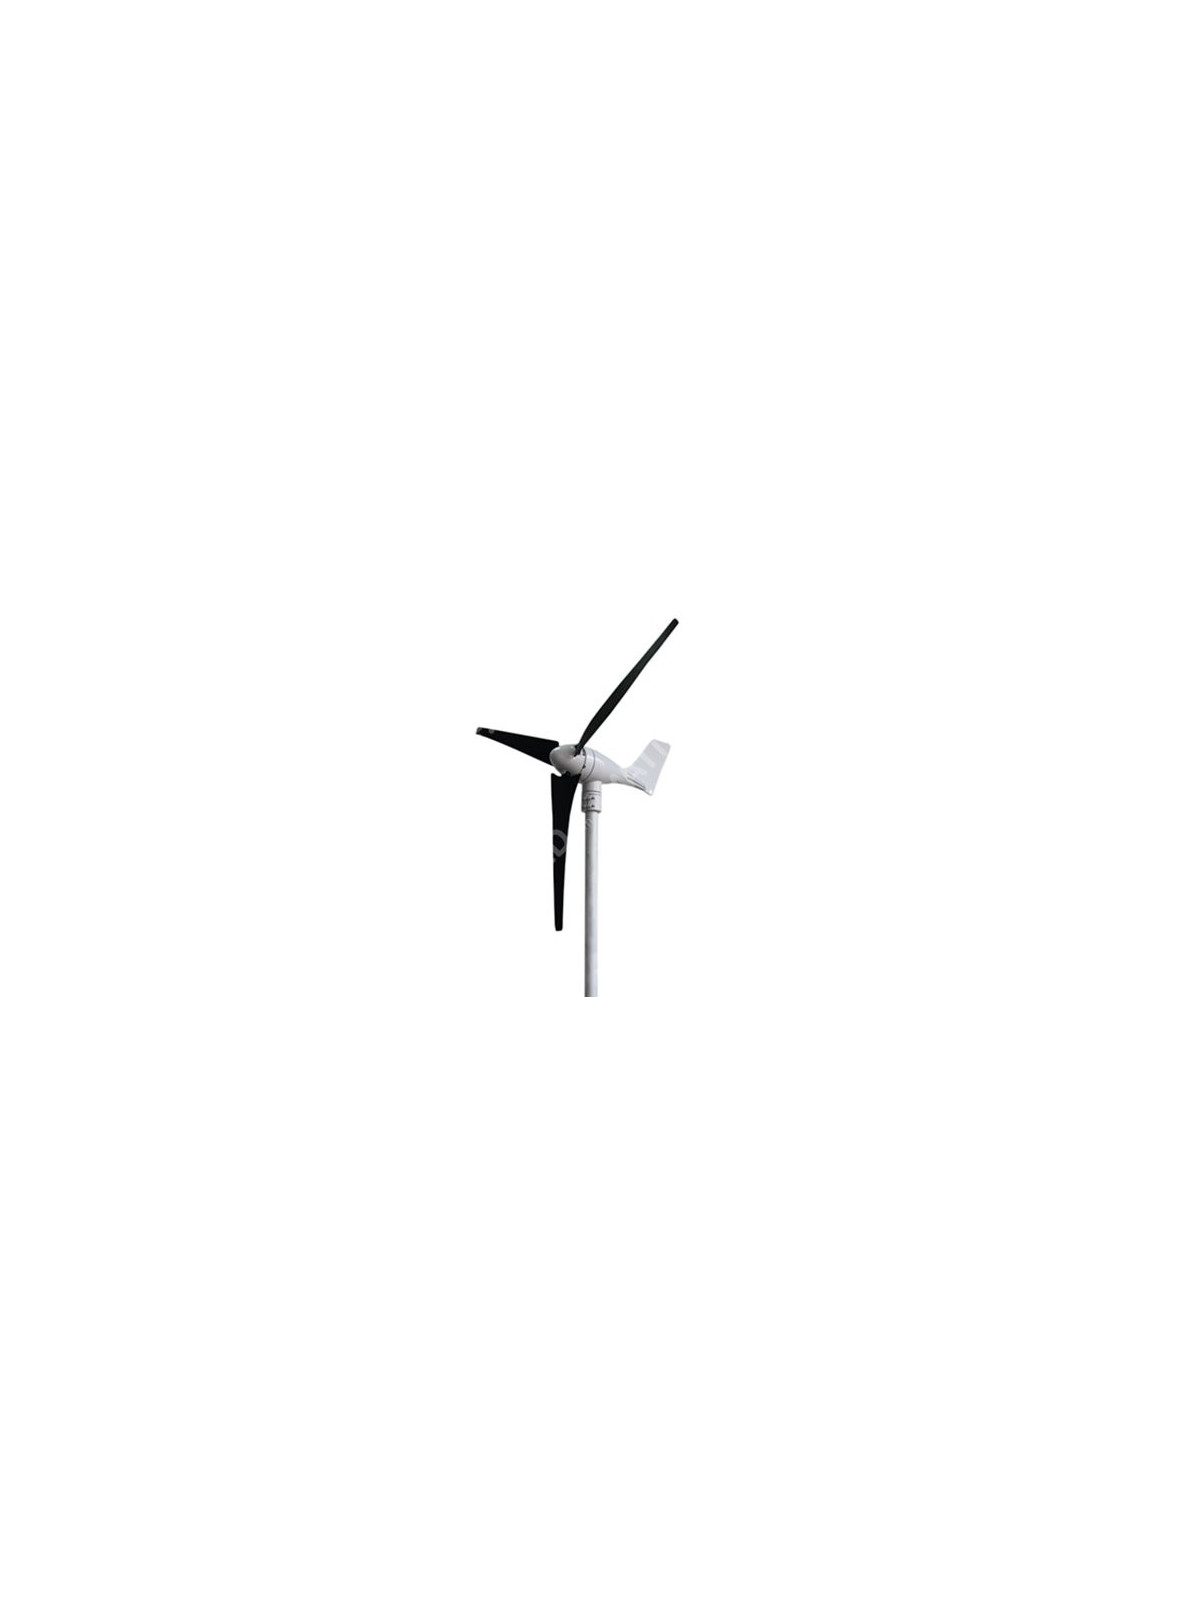 X-400 de Newmeil de turbina de viento